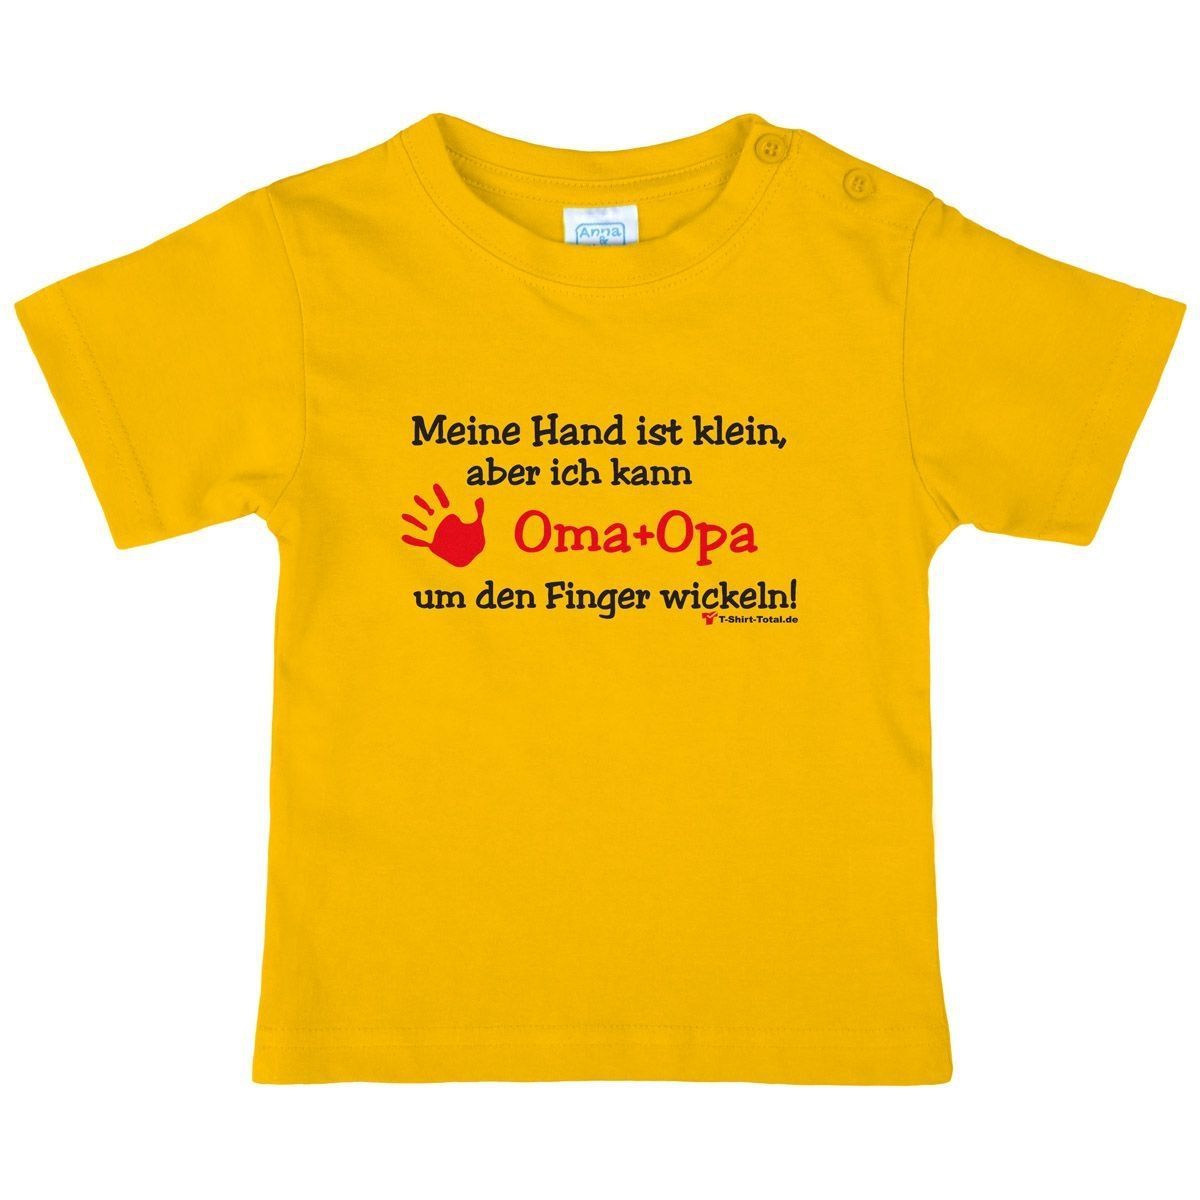 Kleine Hand Oma Opa Kinder T-Shirt gelb 56 / 62